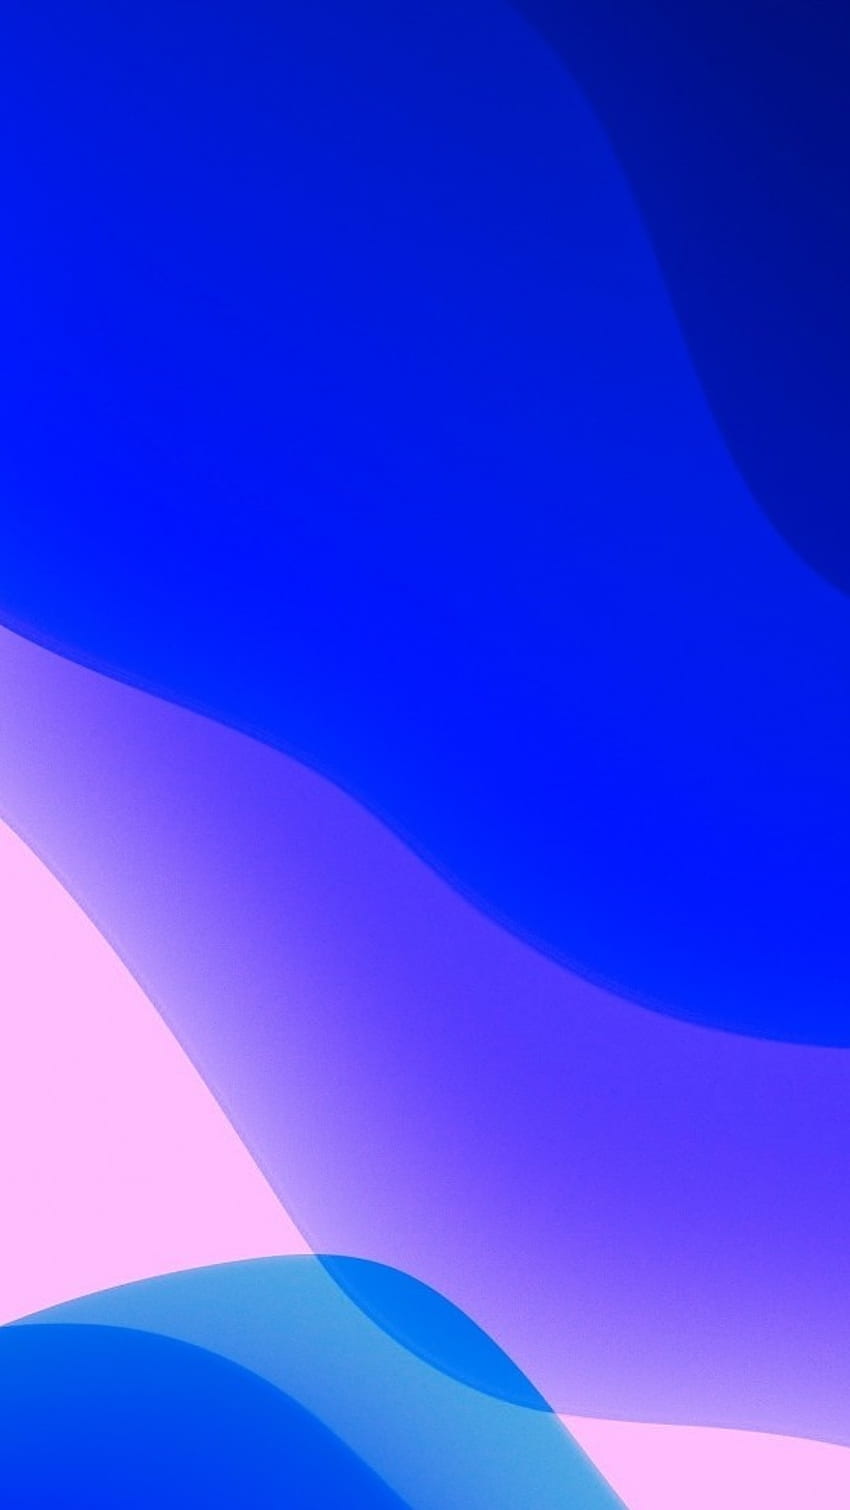 Hình nền iPhone 13 Pro Max, Blue, Pink: Thiết kế độc đáo màu xanh dương và hồng của iPhone 13 Pro Max sẽ khiến chiếc điện thoại của bạn thêm phần nổi bật. Hãy xem những hình nền với màu sắc độc đáo này, cùng với độ phân giải cao và hình ảnh đẹp nhất. Đảm bảo bạn sẽ cảm thấy ấn tượng và hài lòng.